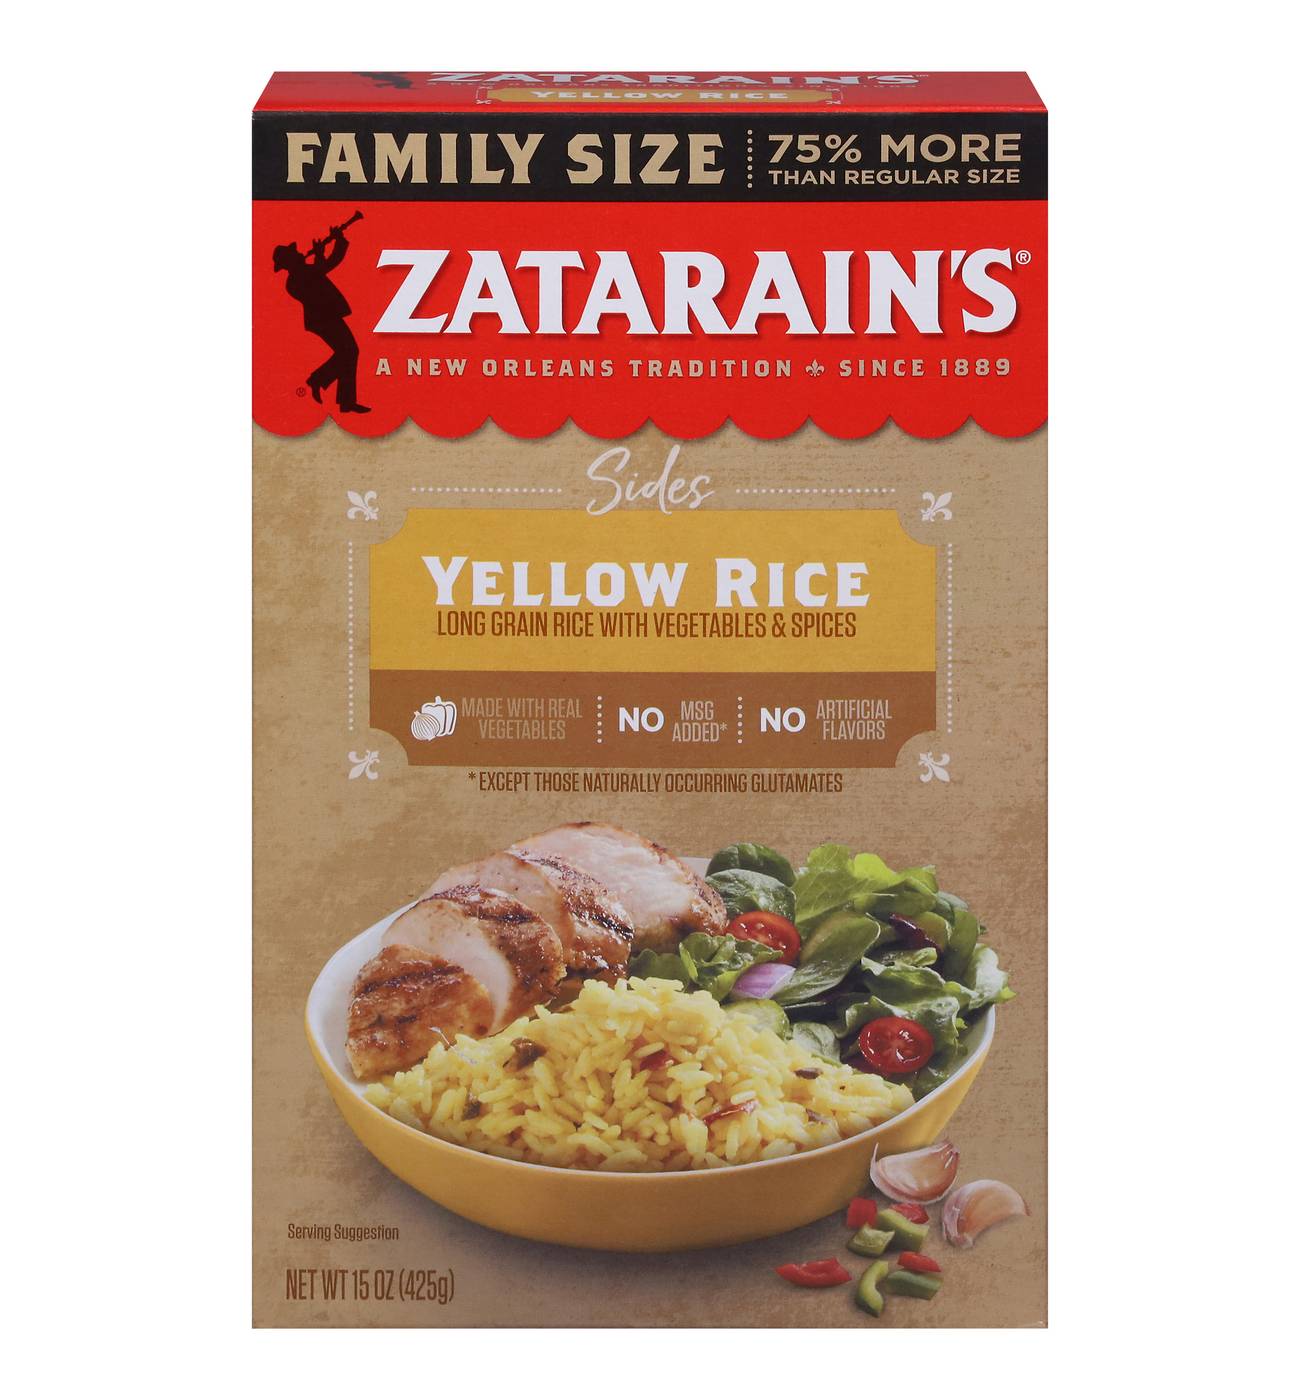 Zatarain's Yellow Rice Family Size; image 1 of 7